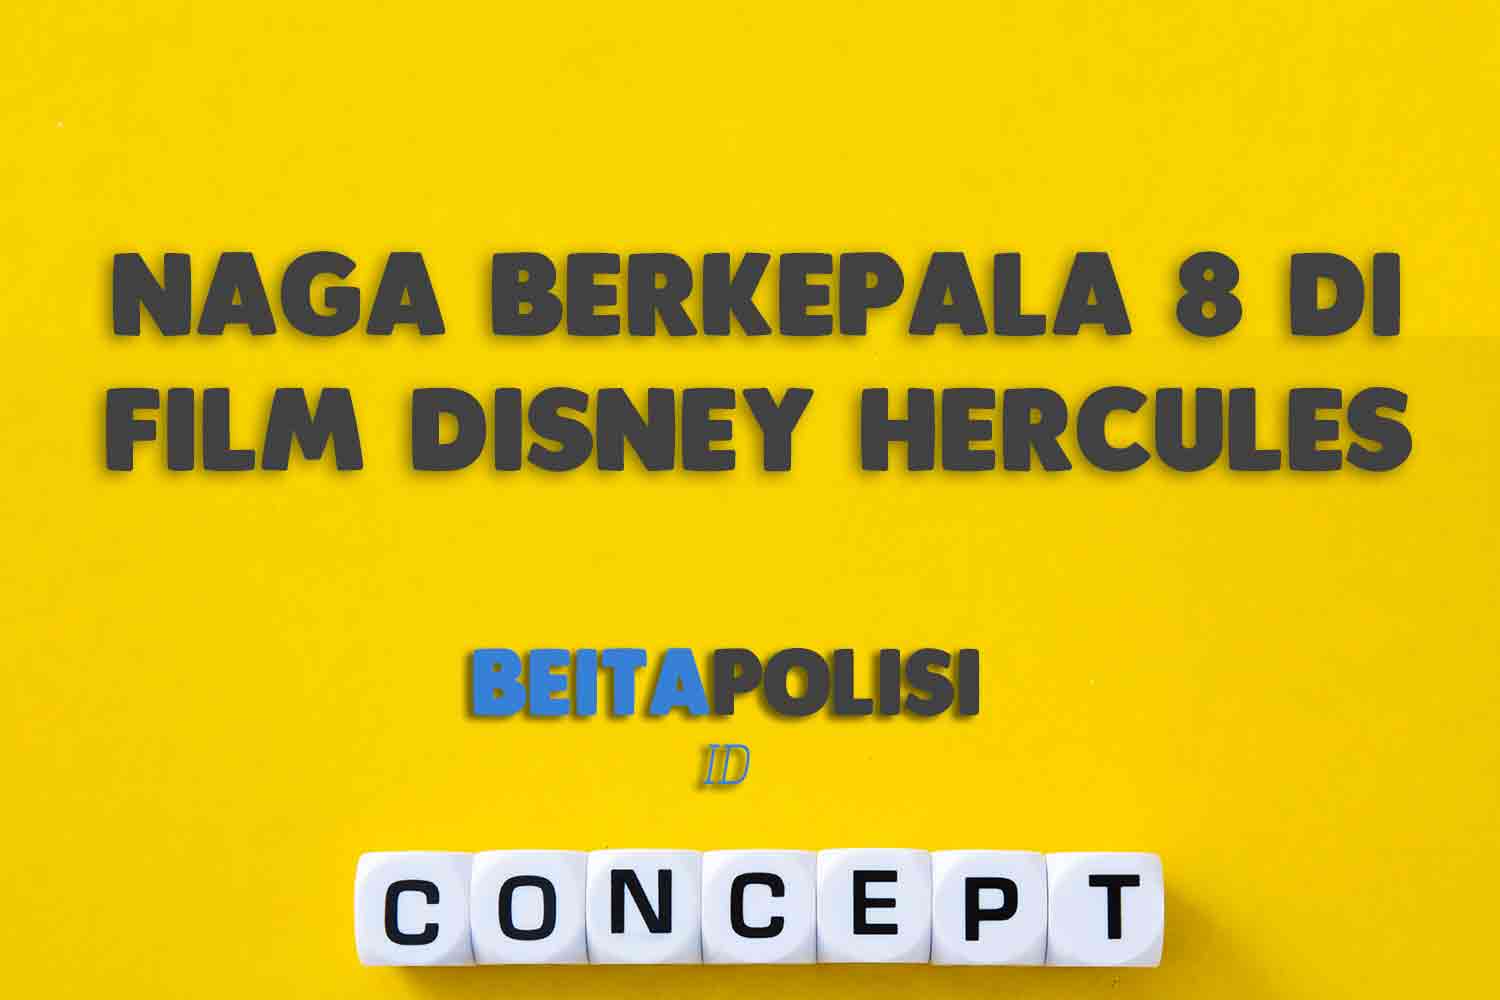 Naga Berkepala 8 Di Film Disney Hercules Adalah